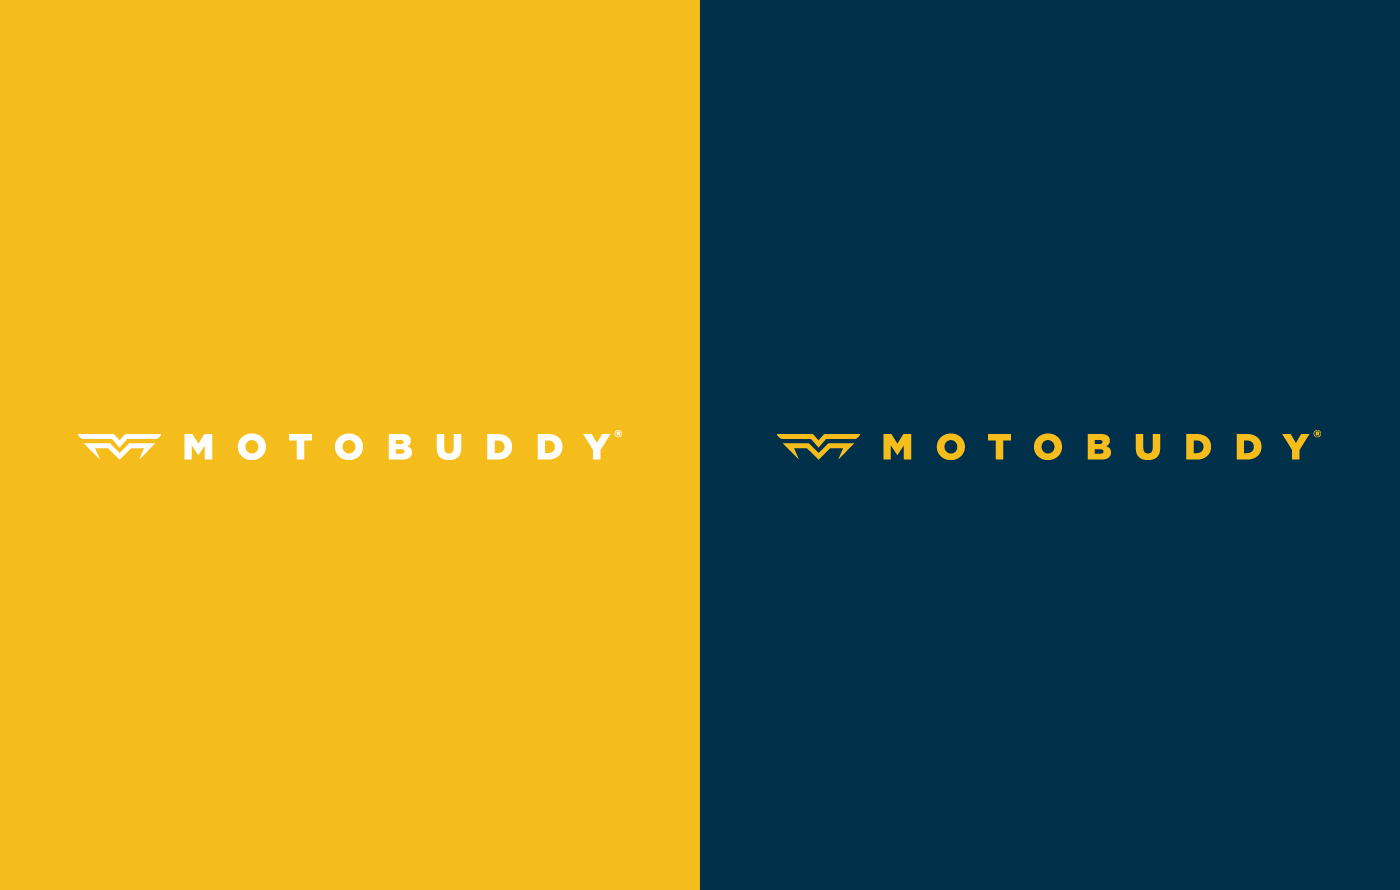 logo bikes moto Buddy motar bikers riders